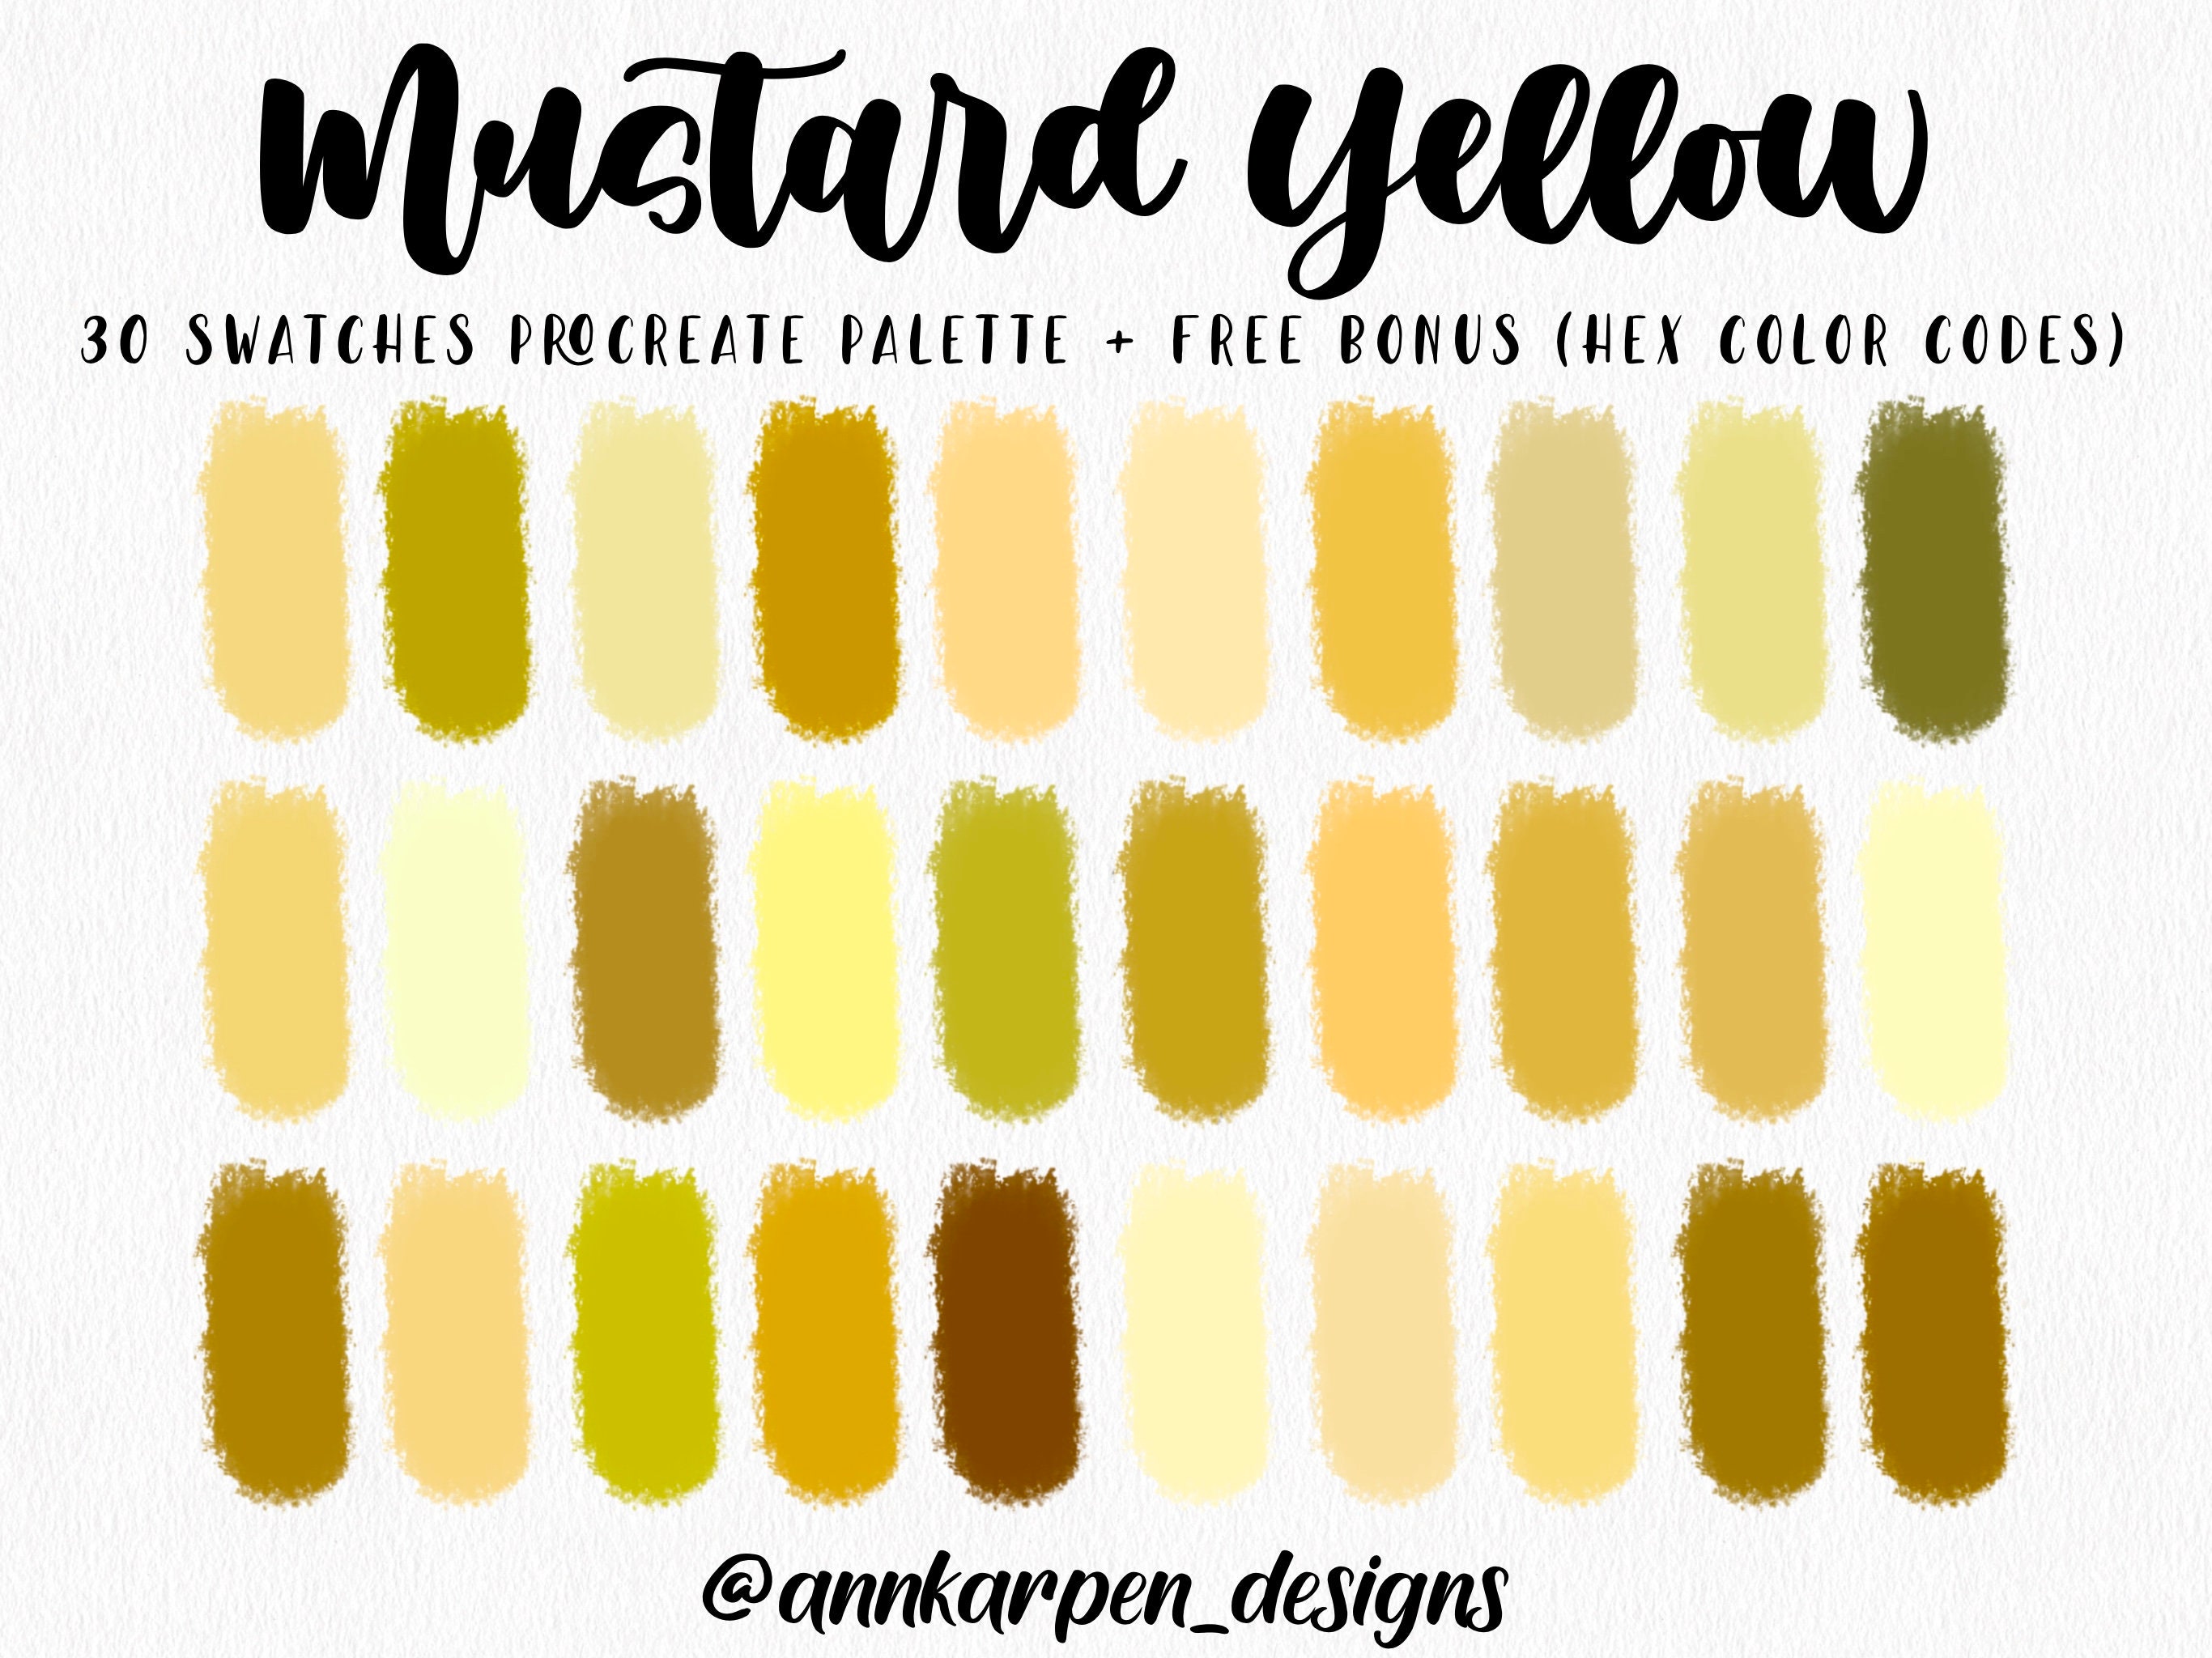 1. "Mustard Yellow" by Essie - wide 3